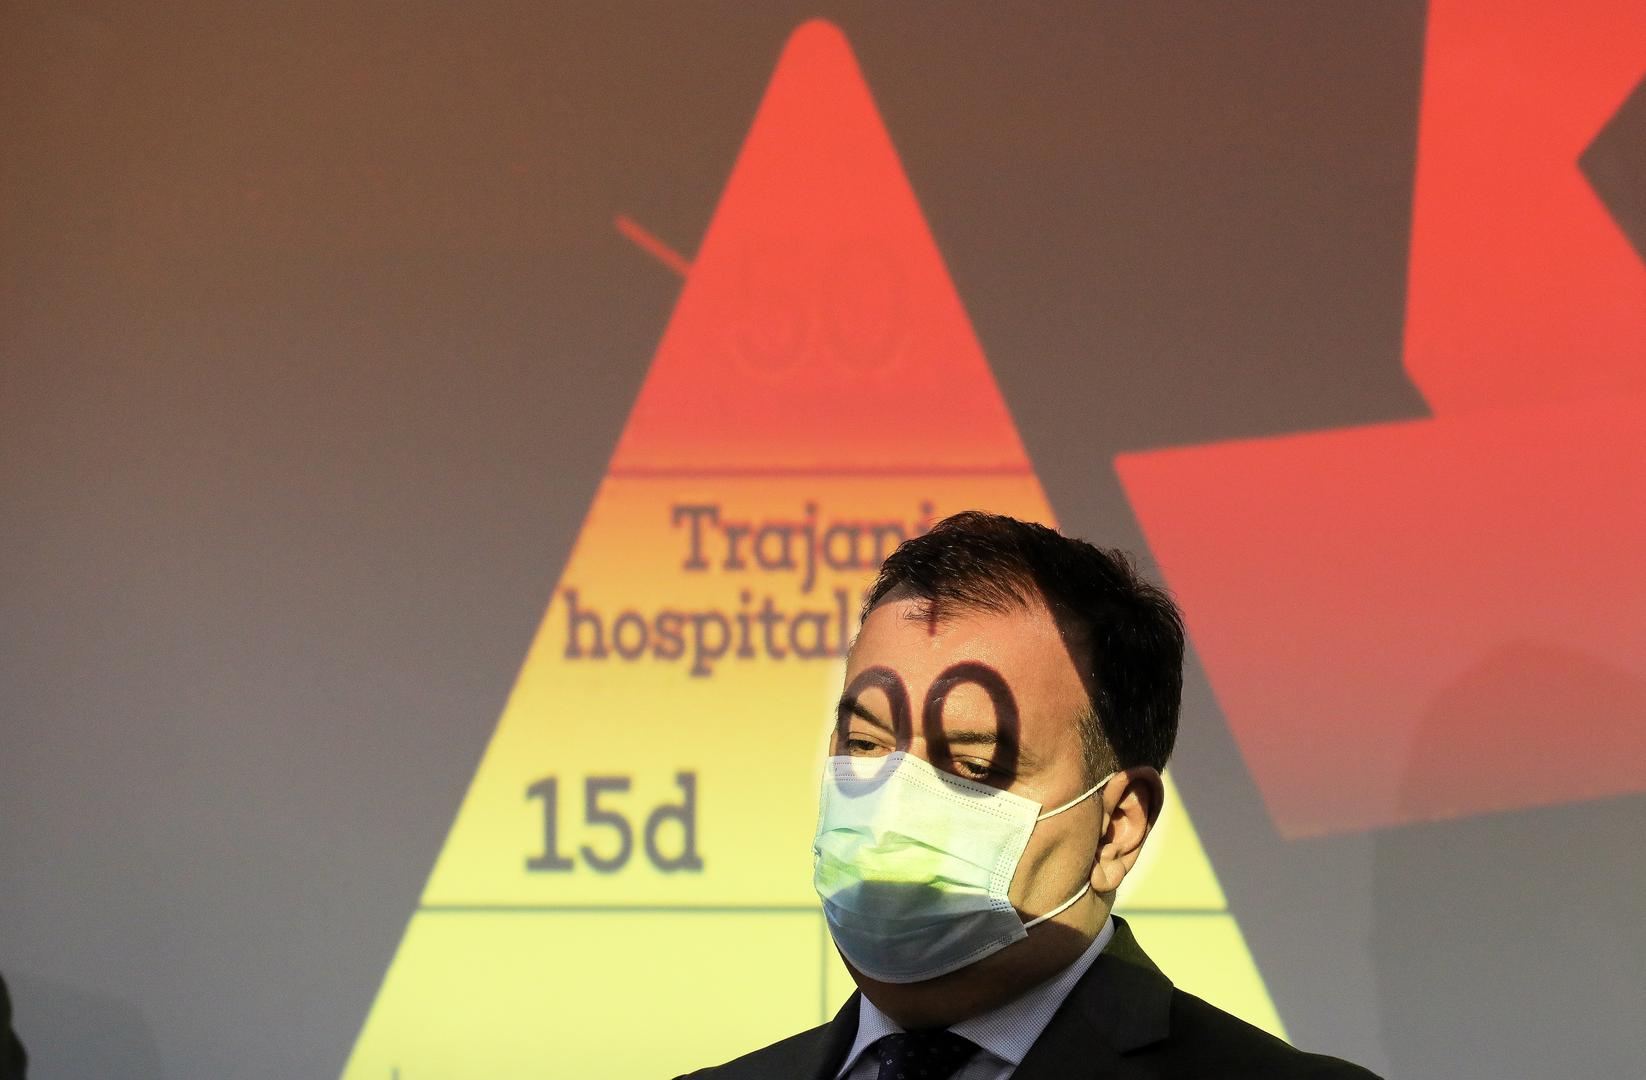 Ministar Vili Beroš na Zoom konferenciji i sastanku s ravnateljima bolnica osvjetljenog lica što je odavalo dojam kako nosi naočale